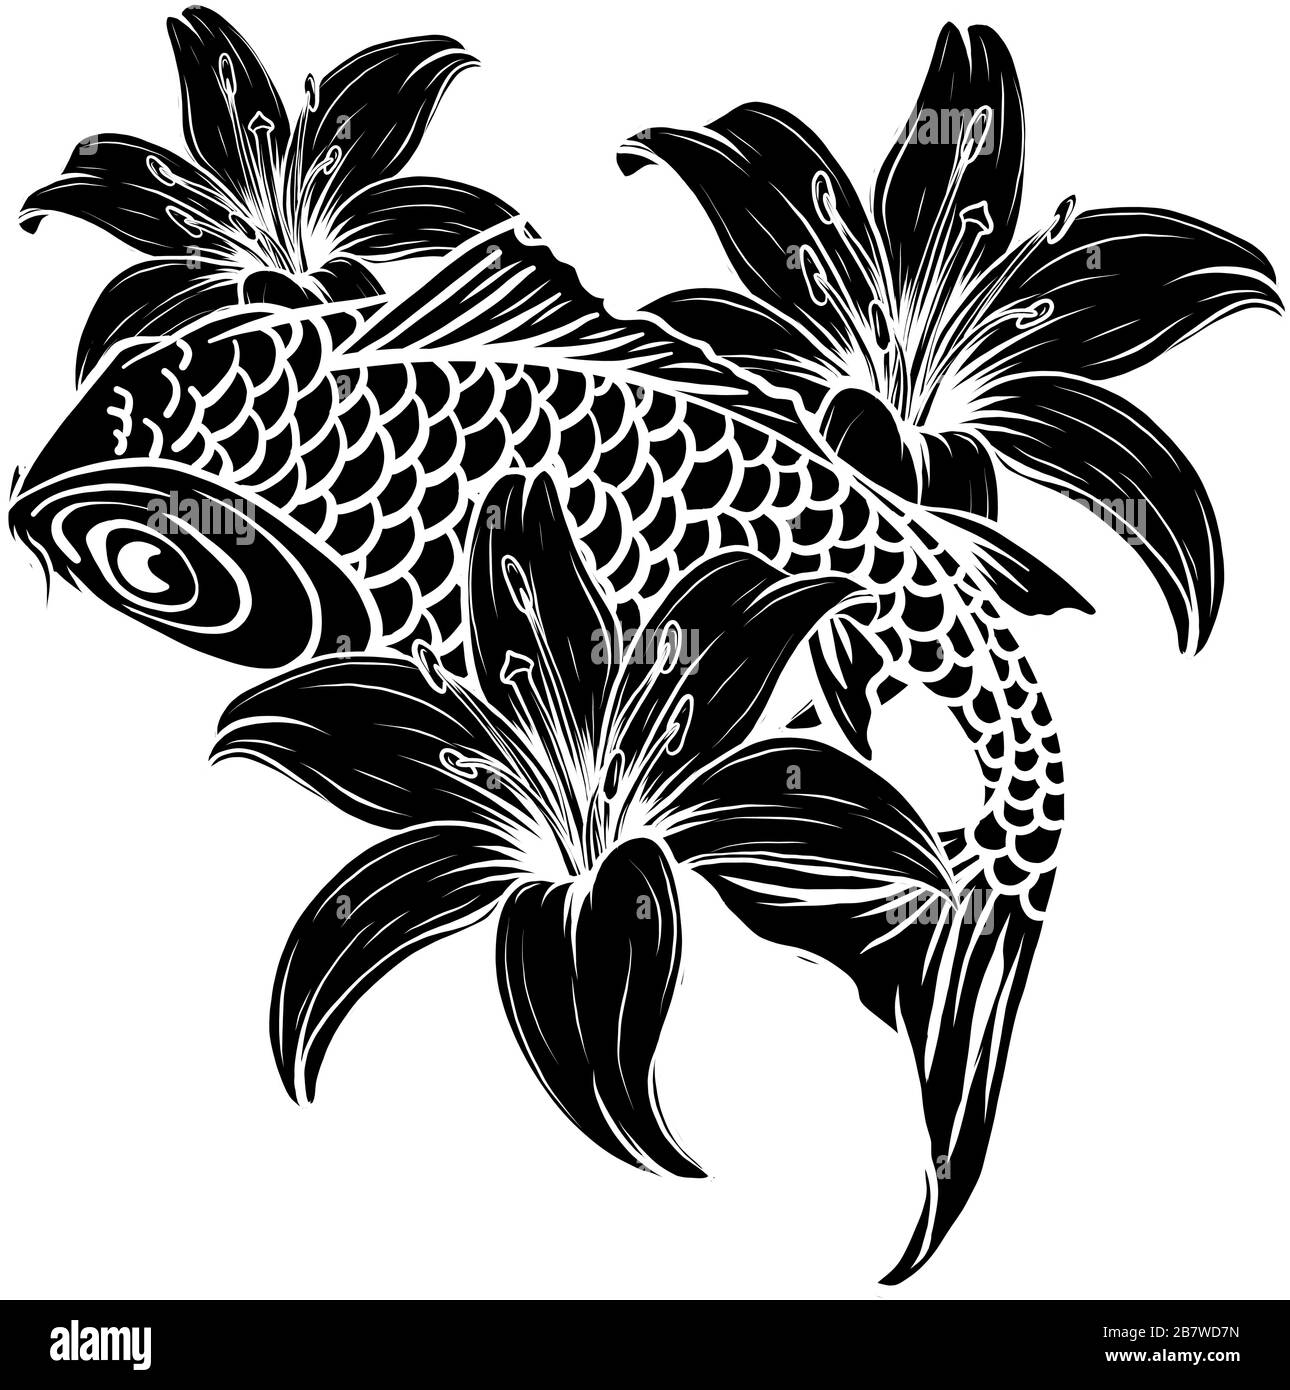 Image de silhouette d'illustration vectorielle de poisson de carpe géant Illustration de Vecteur